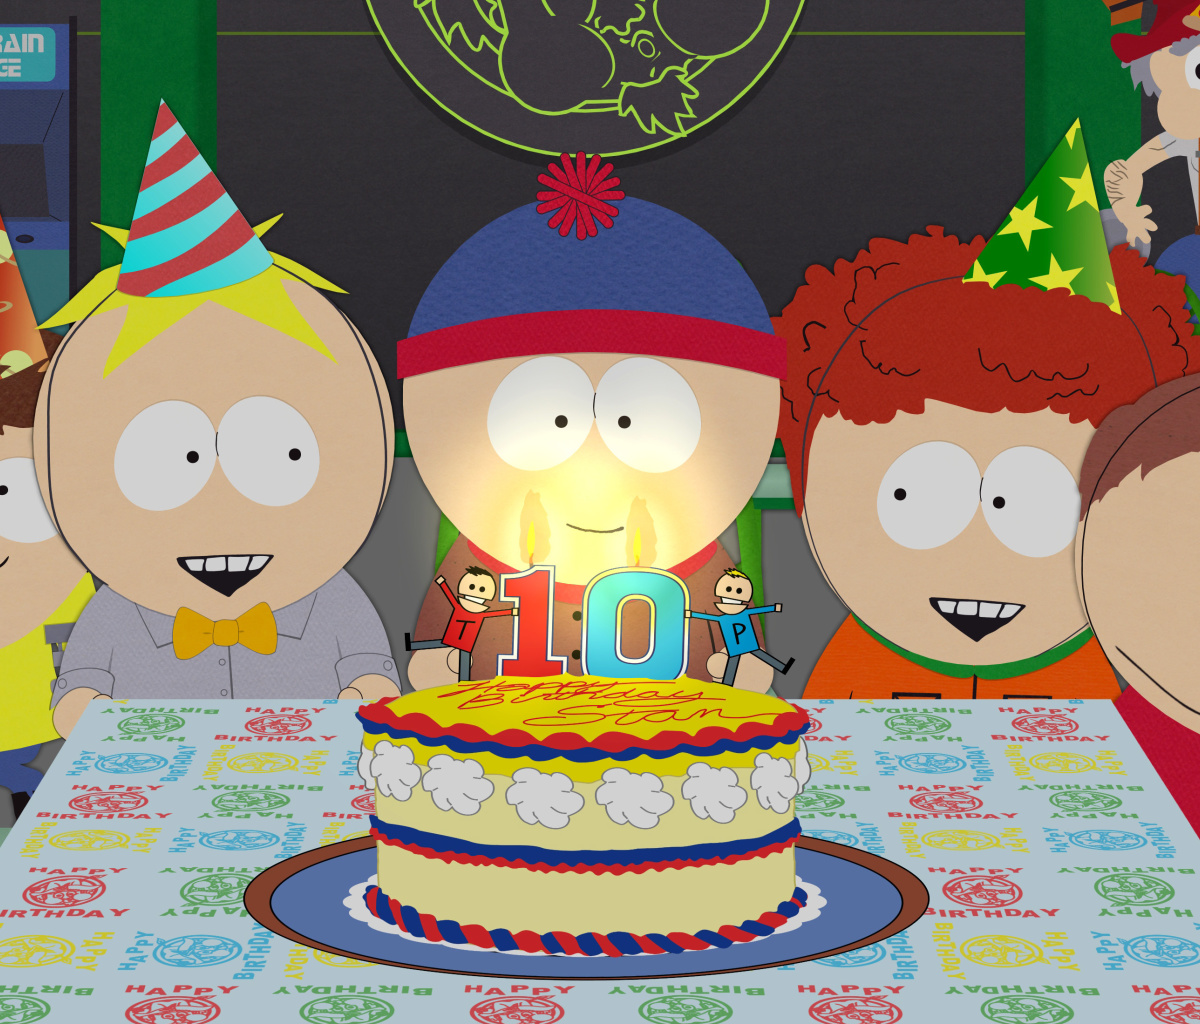 South Park Season 15 Stans Party wallpaper 1200x1024